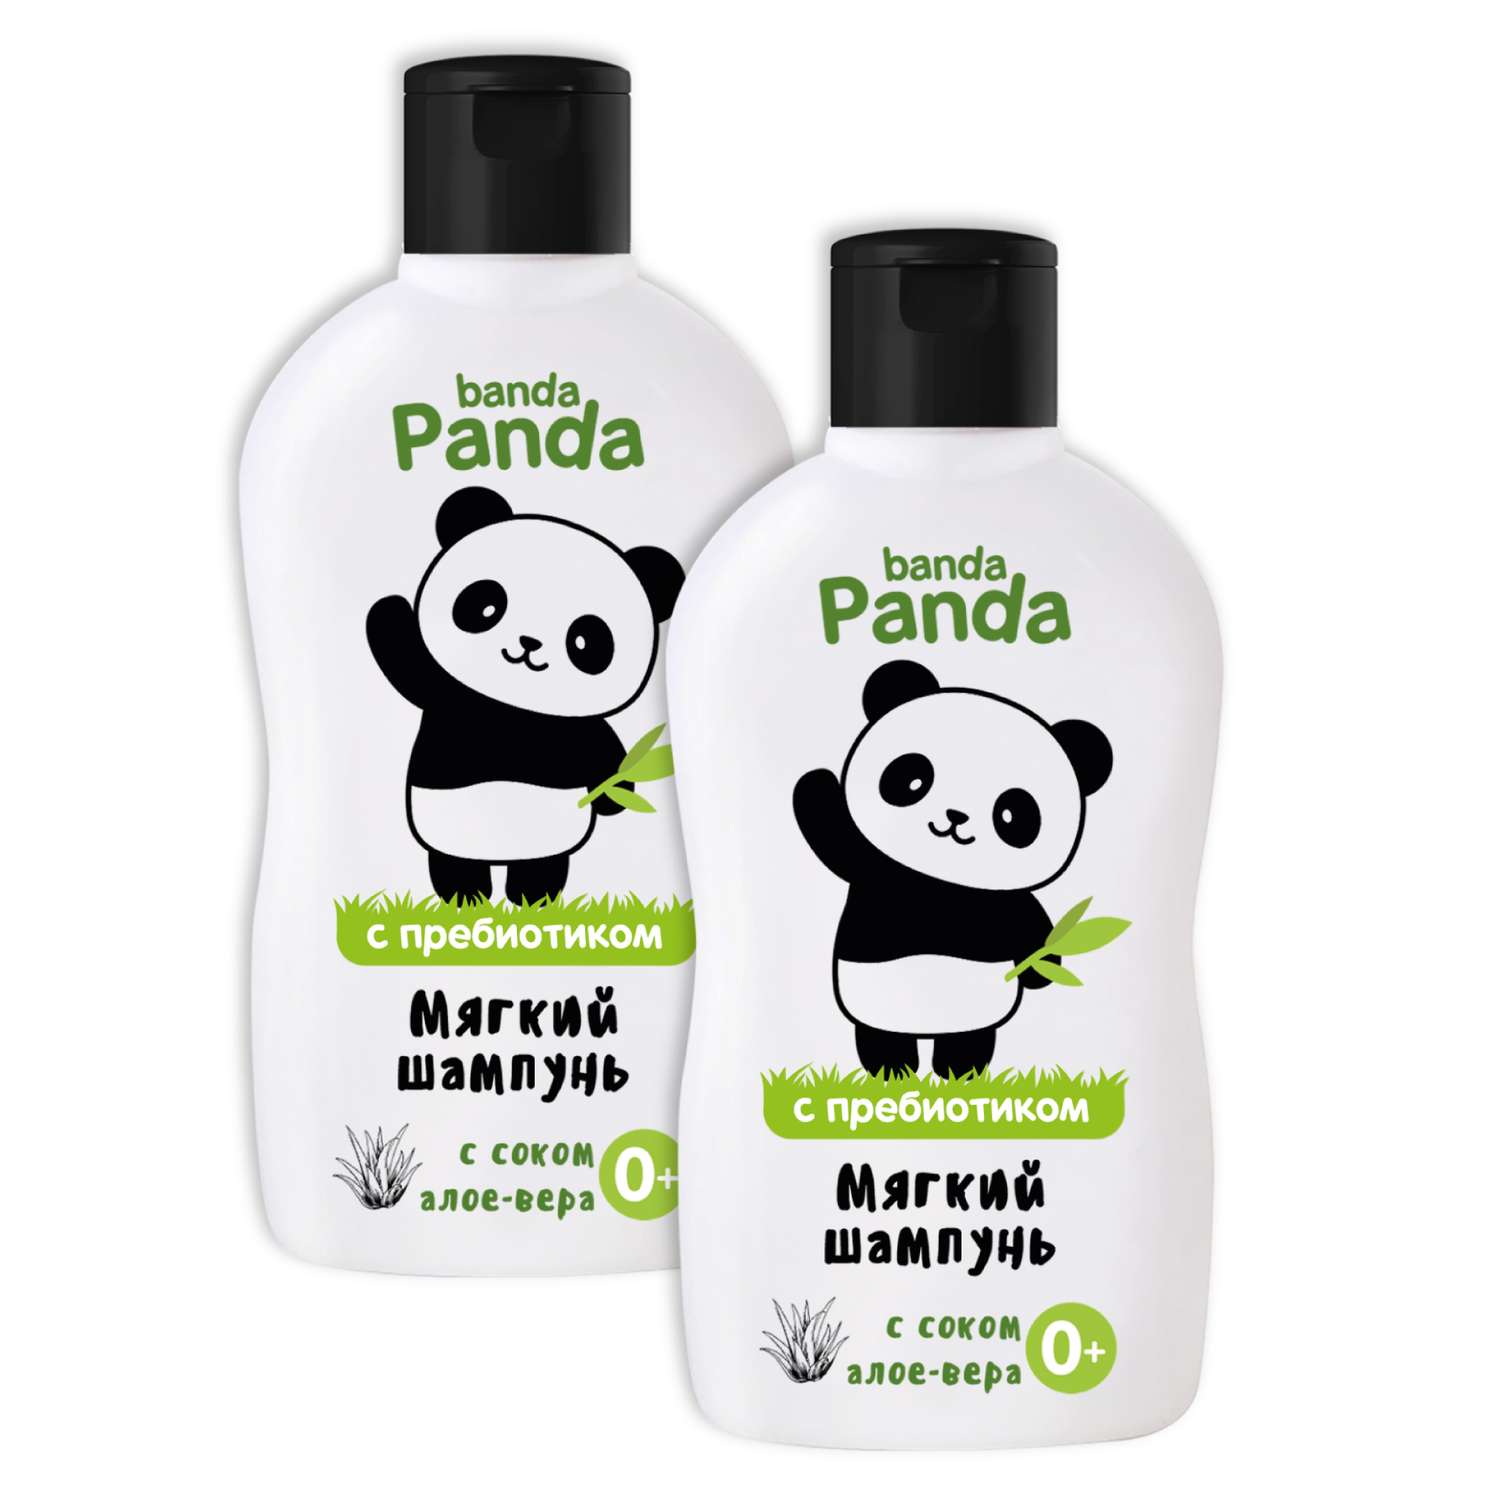 Набор с Пребиотиком banda Panda 2 шт по 250 мл Шампунь для волос с соком алоэ-вера 0+ - фото 2